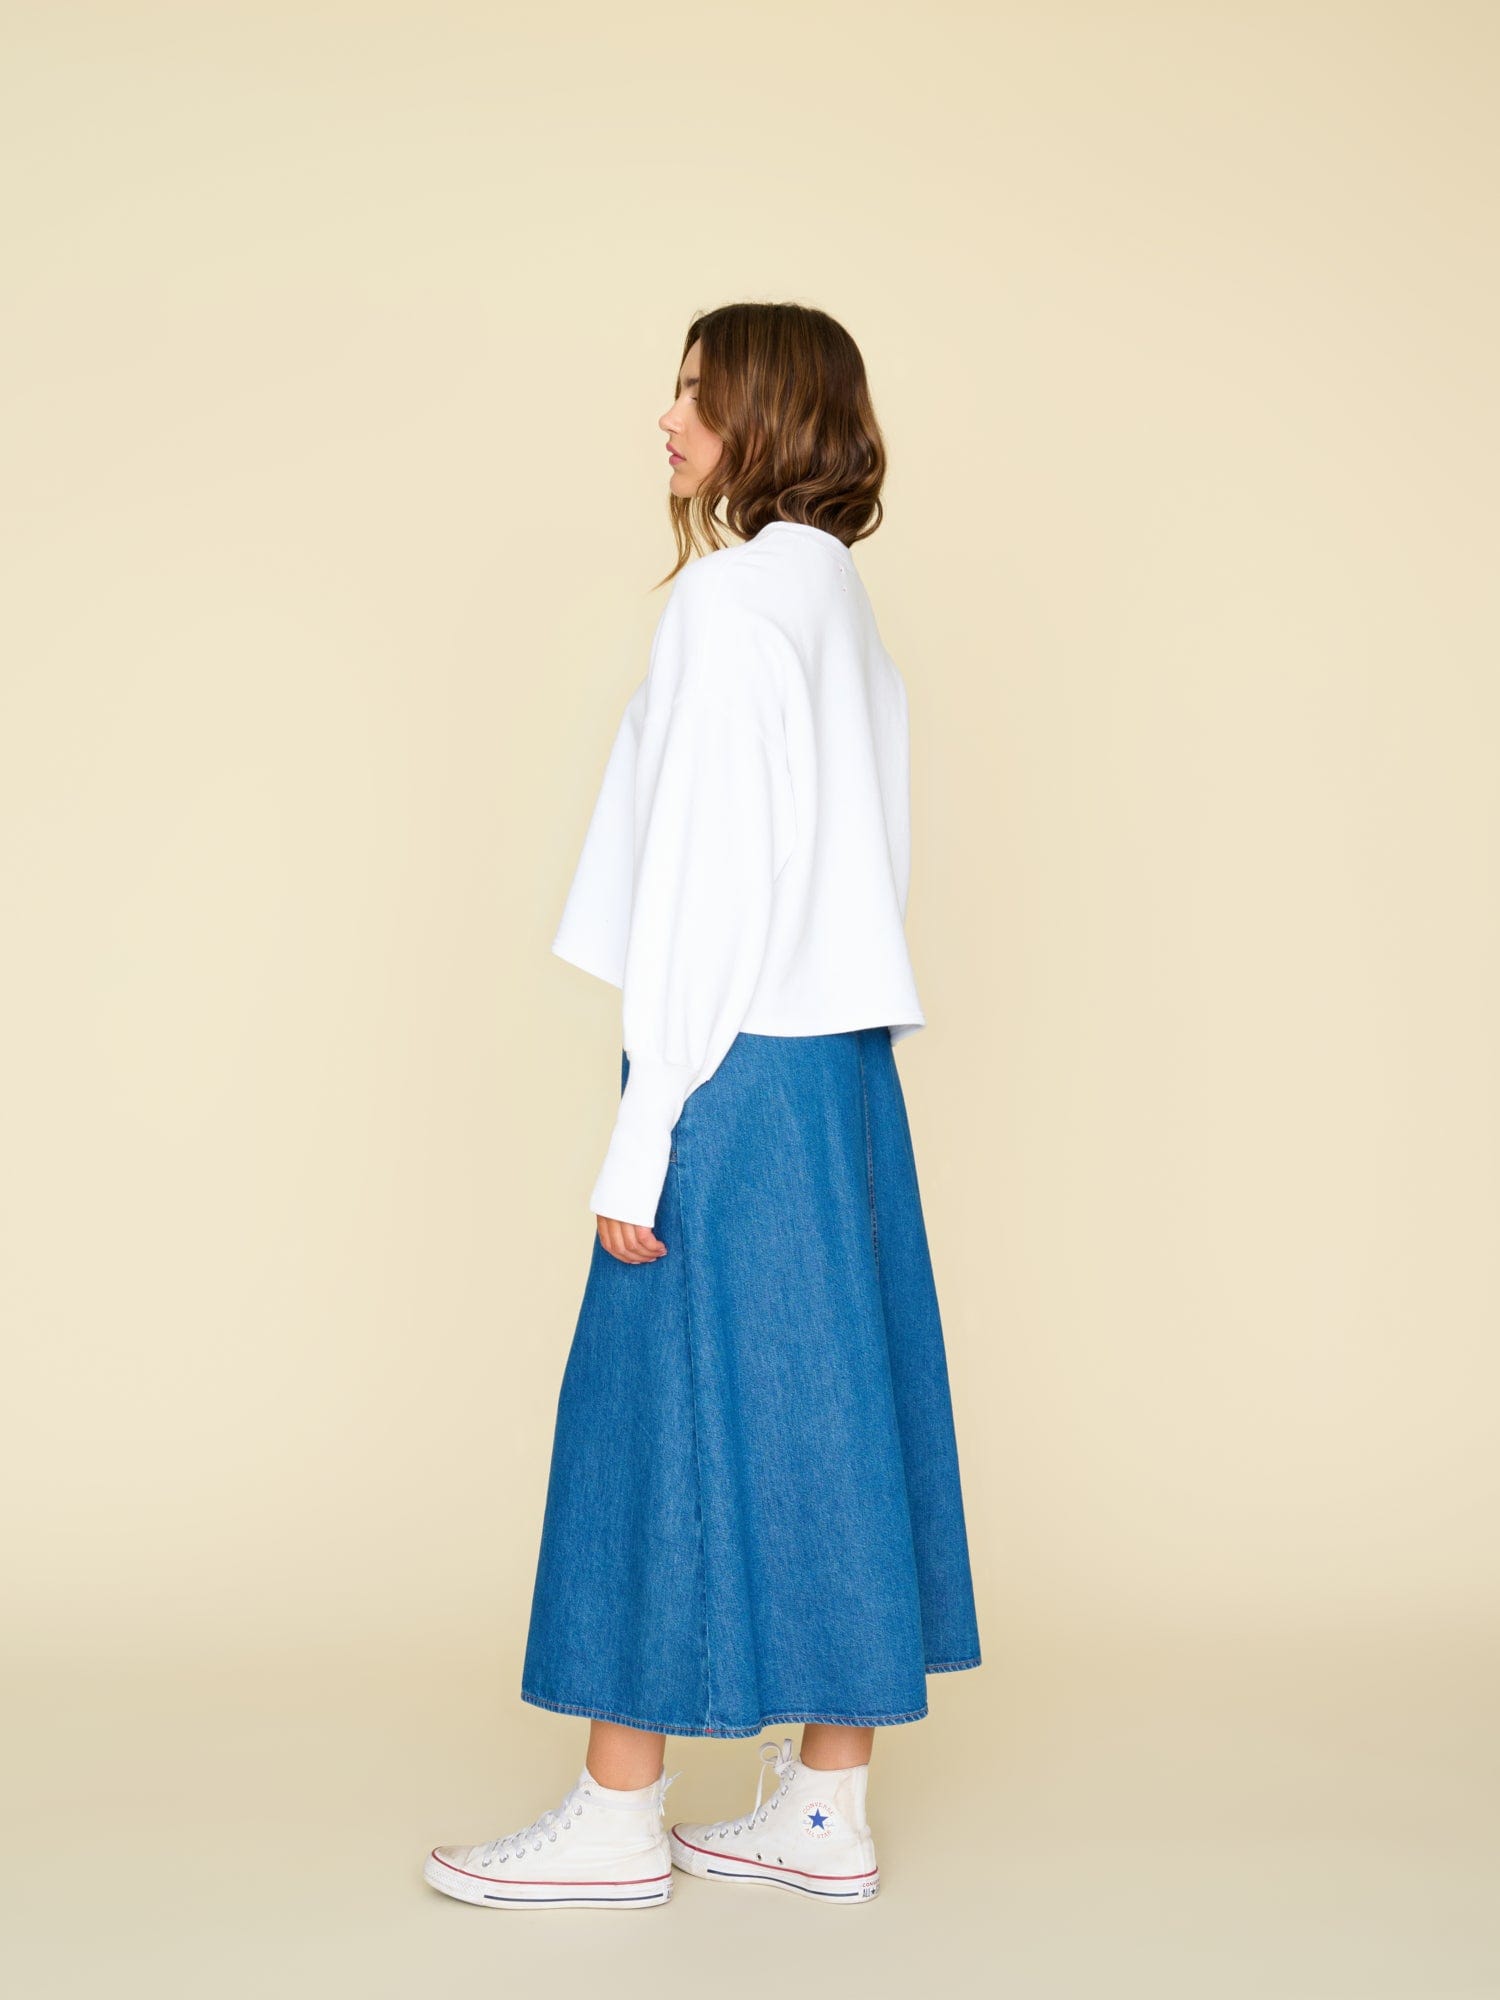 Dress Women Blue Denim One Piece Bib Overall Skirt Short Jumpsuit S | eBay